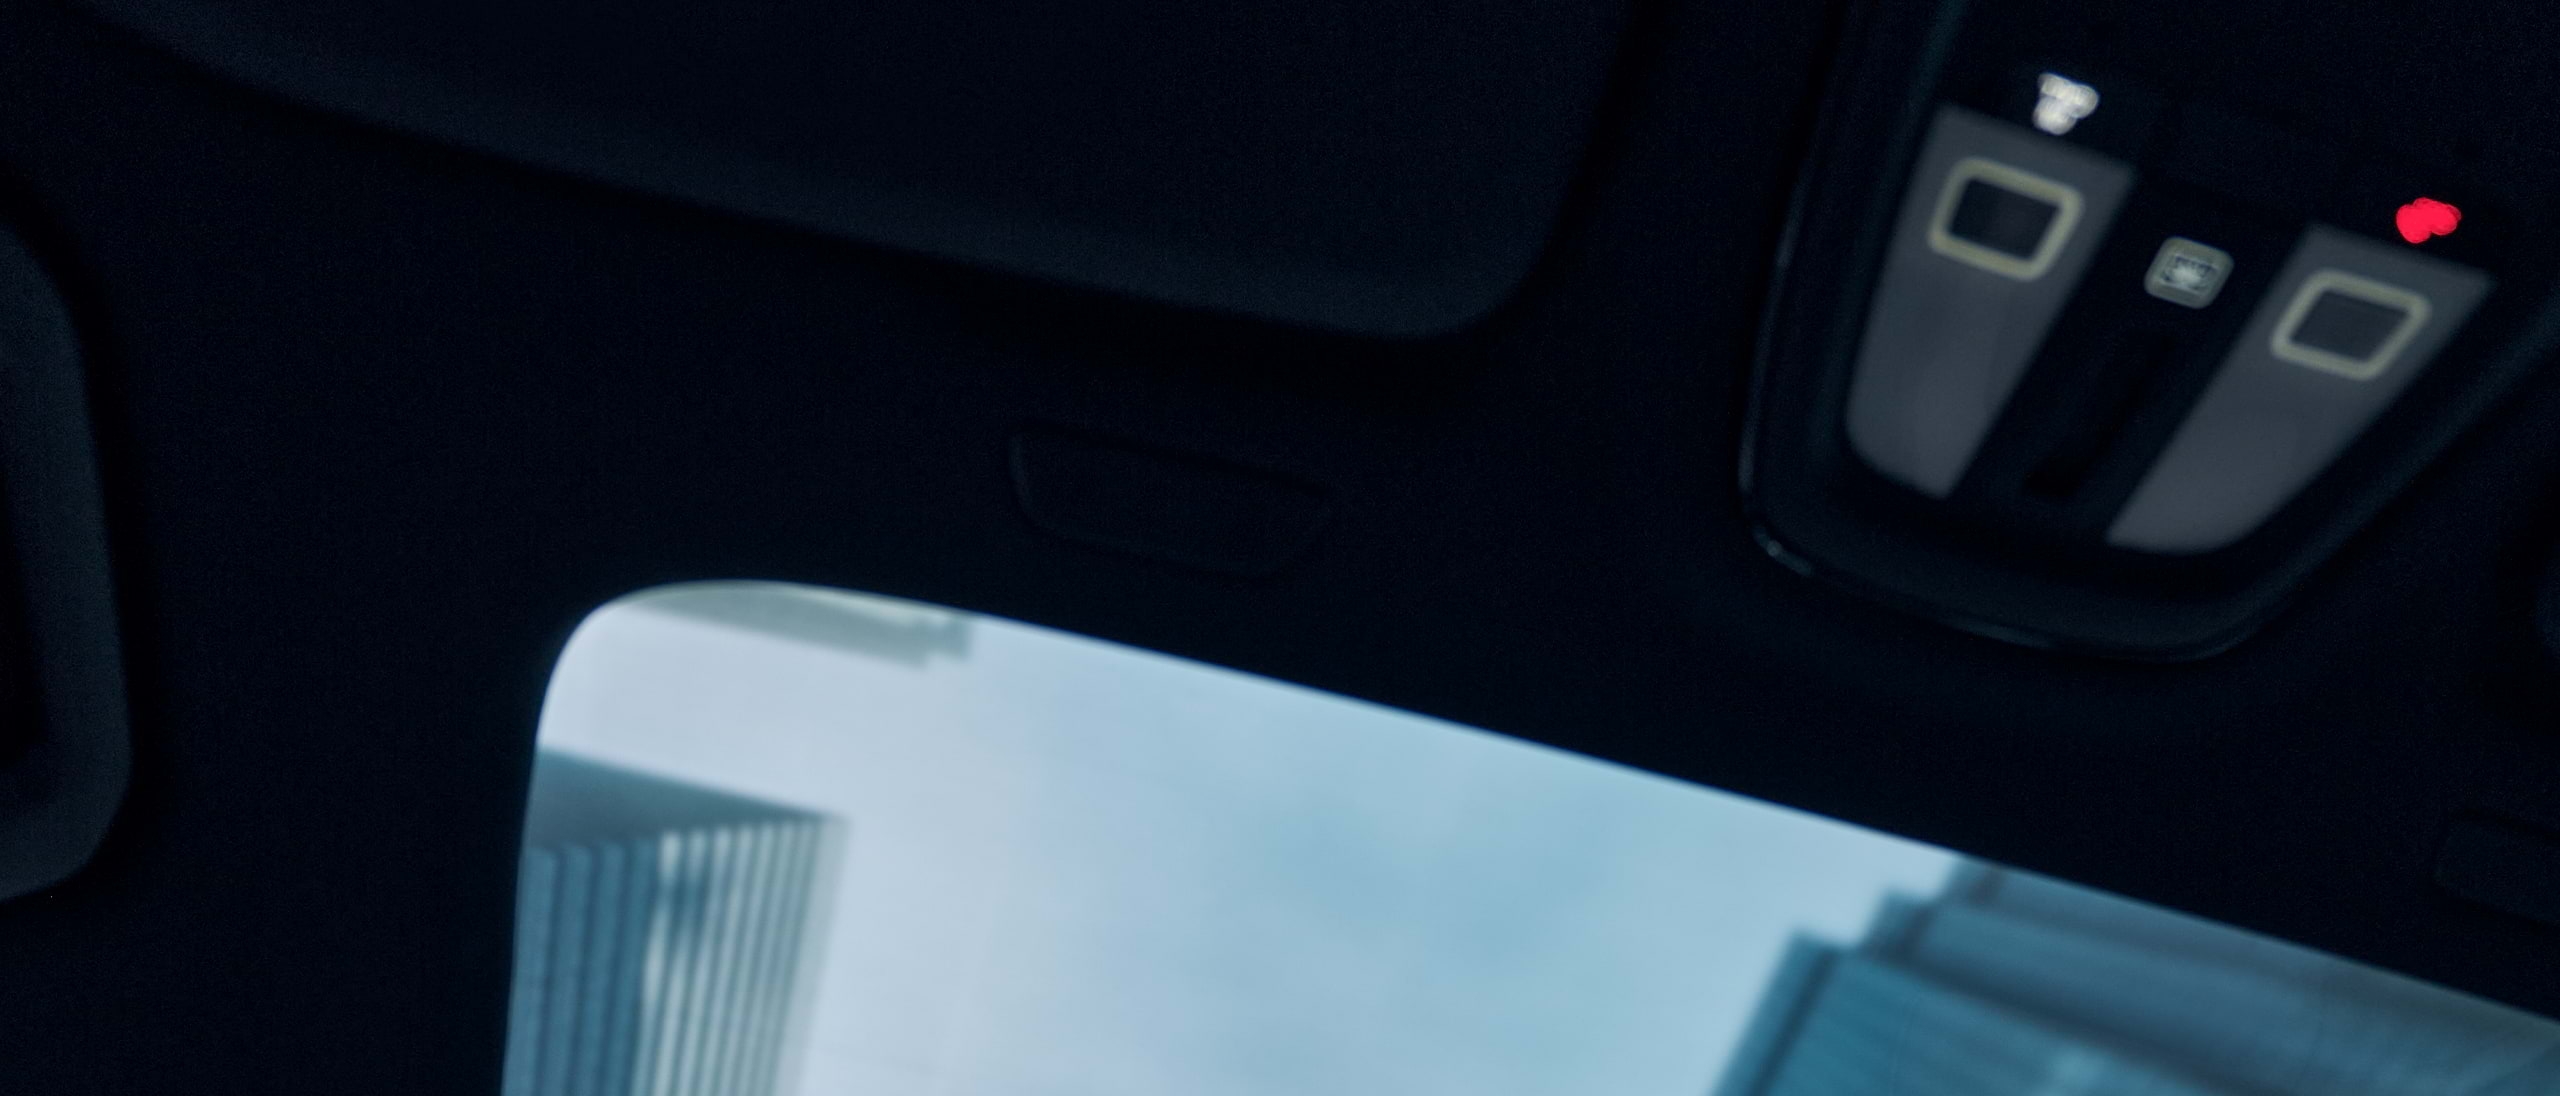 Wolkenkrabbers zijn net zichtbaar door het panoramadak van een rijdende Volvo.